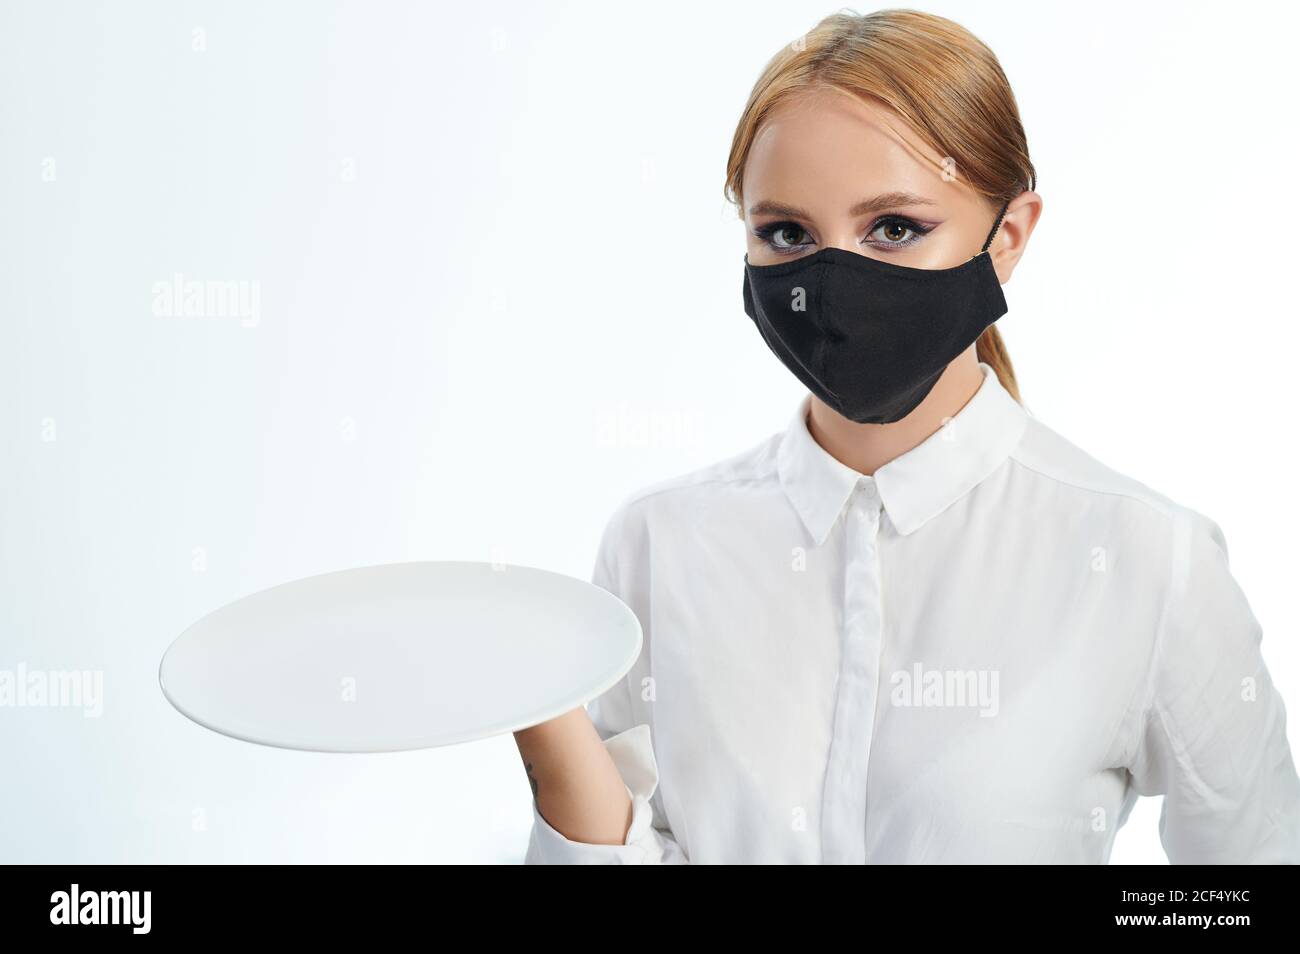 Junge Frau mit leerem Teller isoliert auf weißem Studiohintergrund Stockfoto